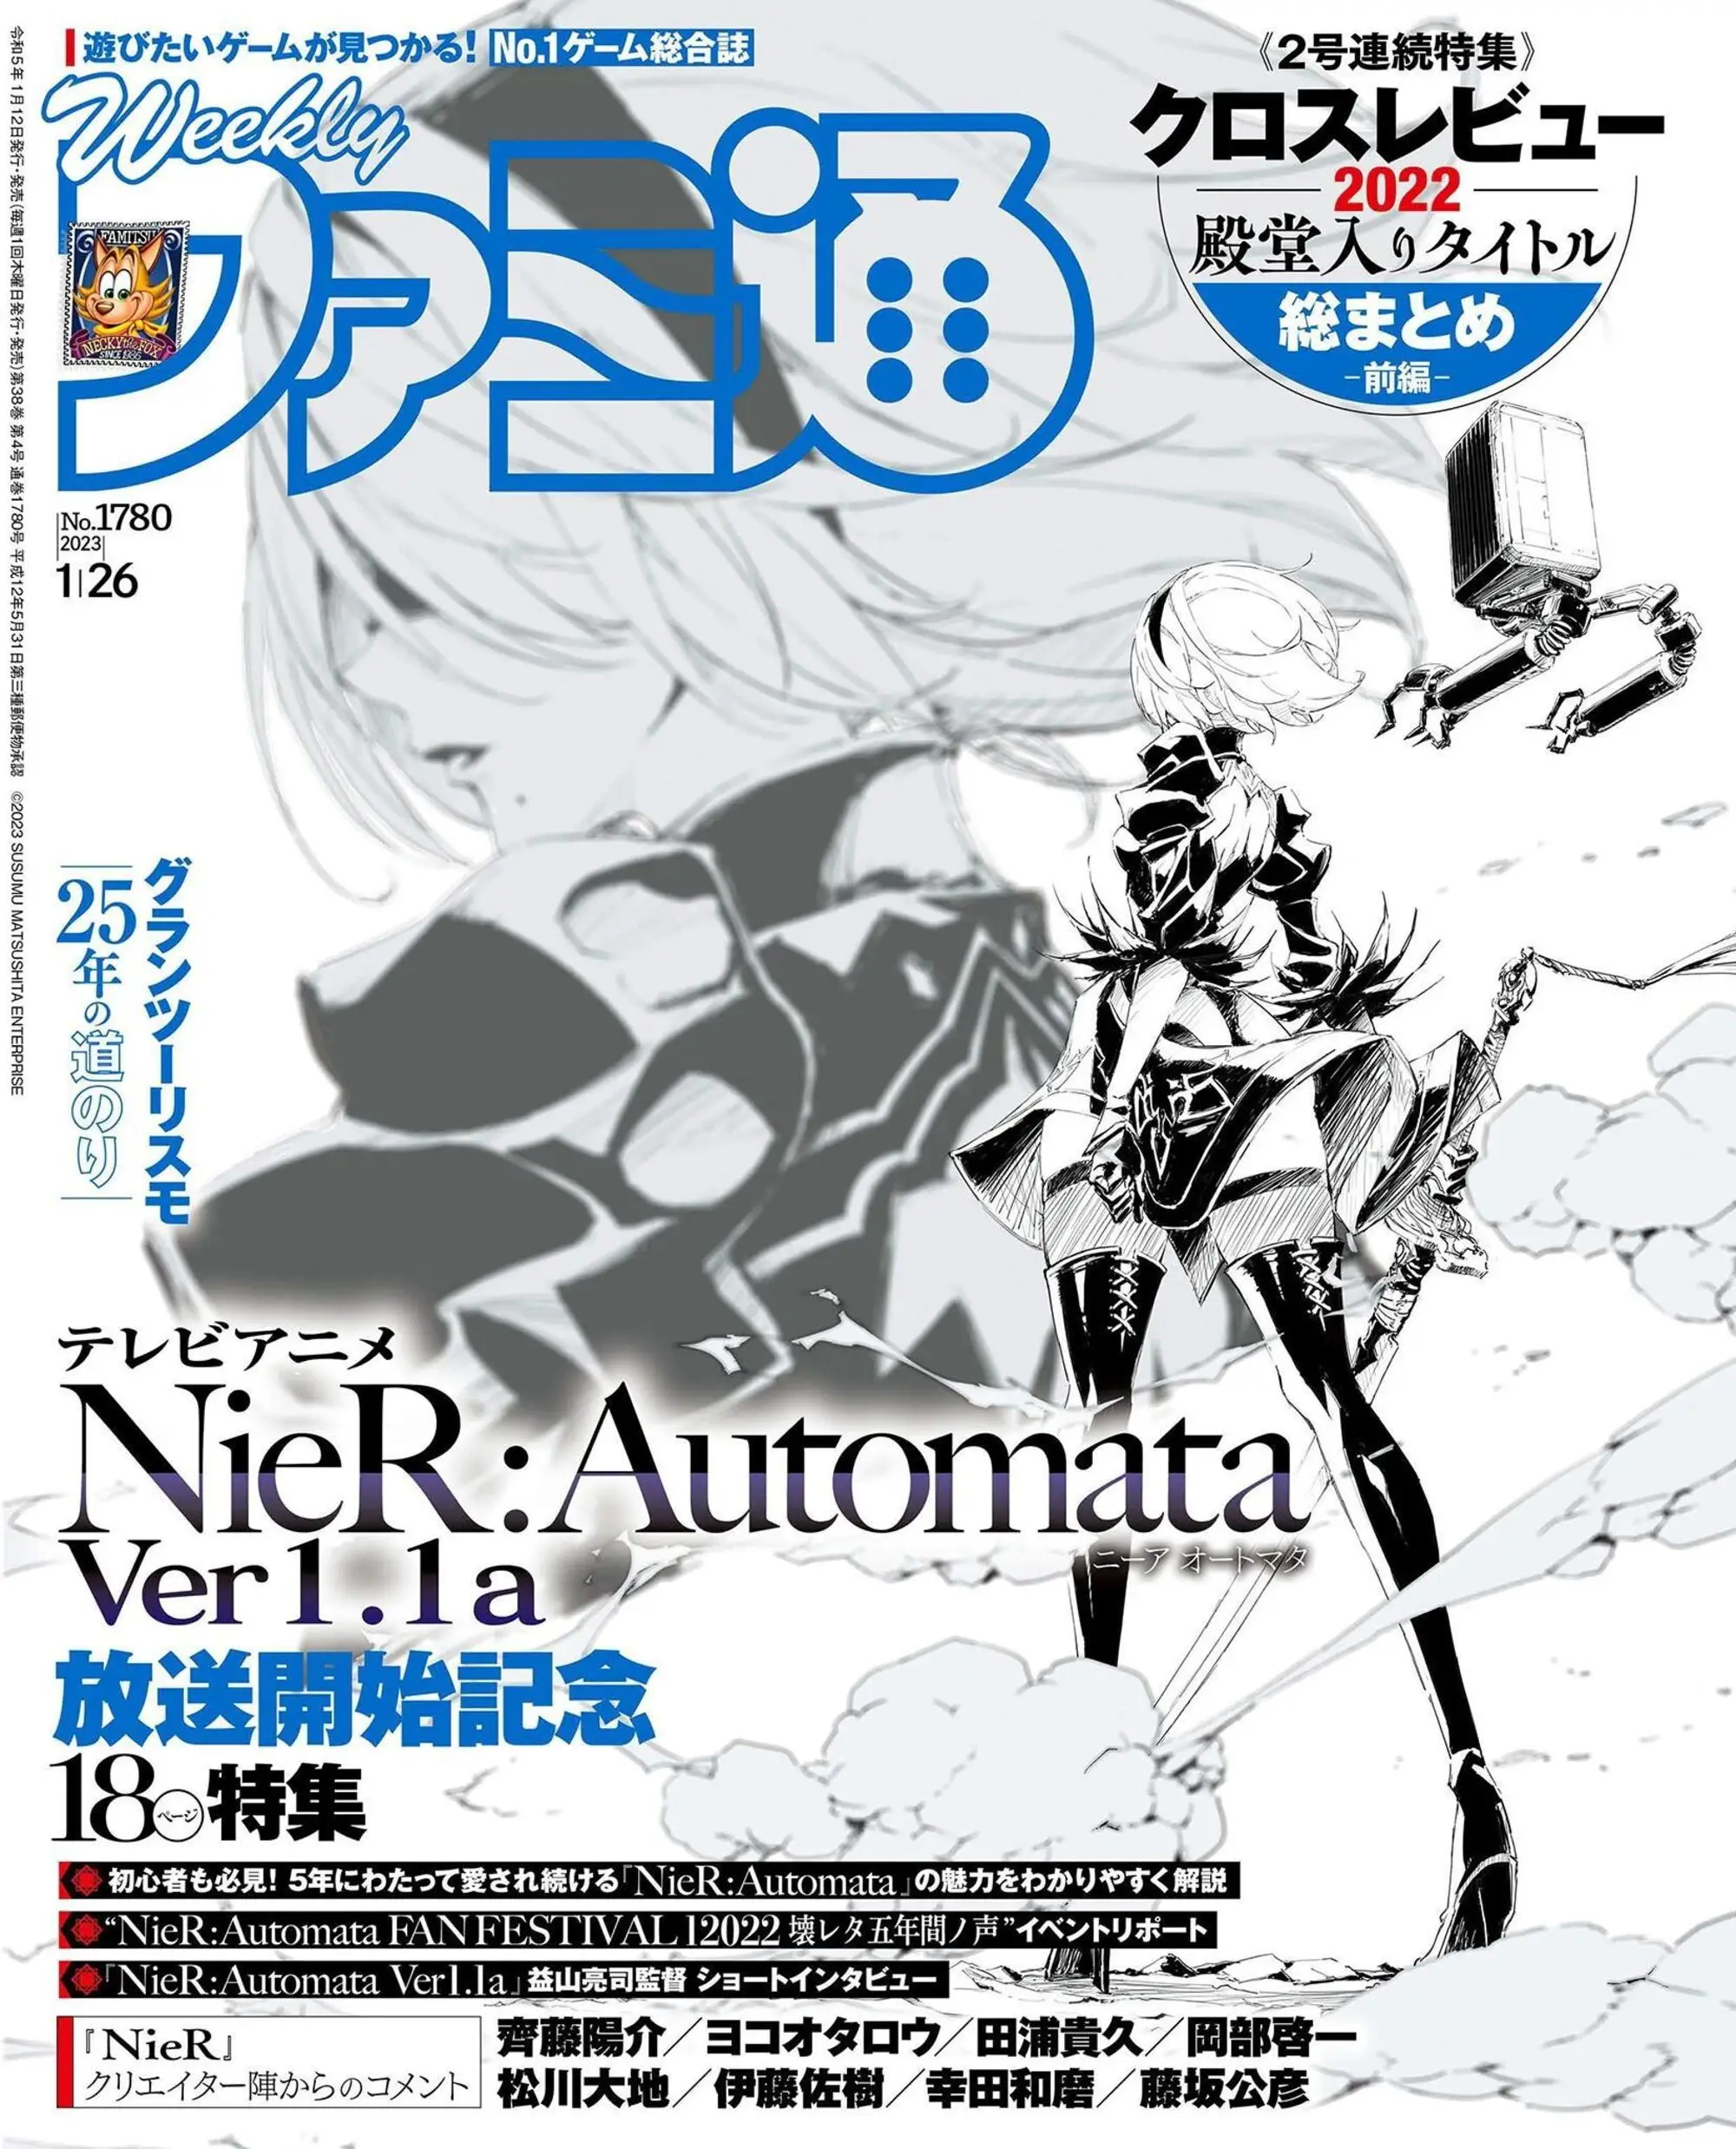 週刊ファミ通 Weekly Famitsu 2023年1月26日